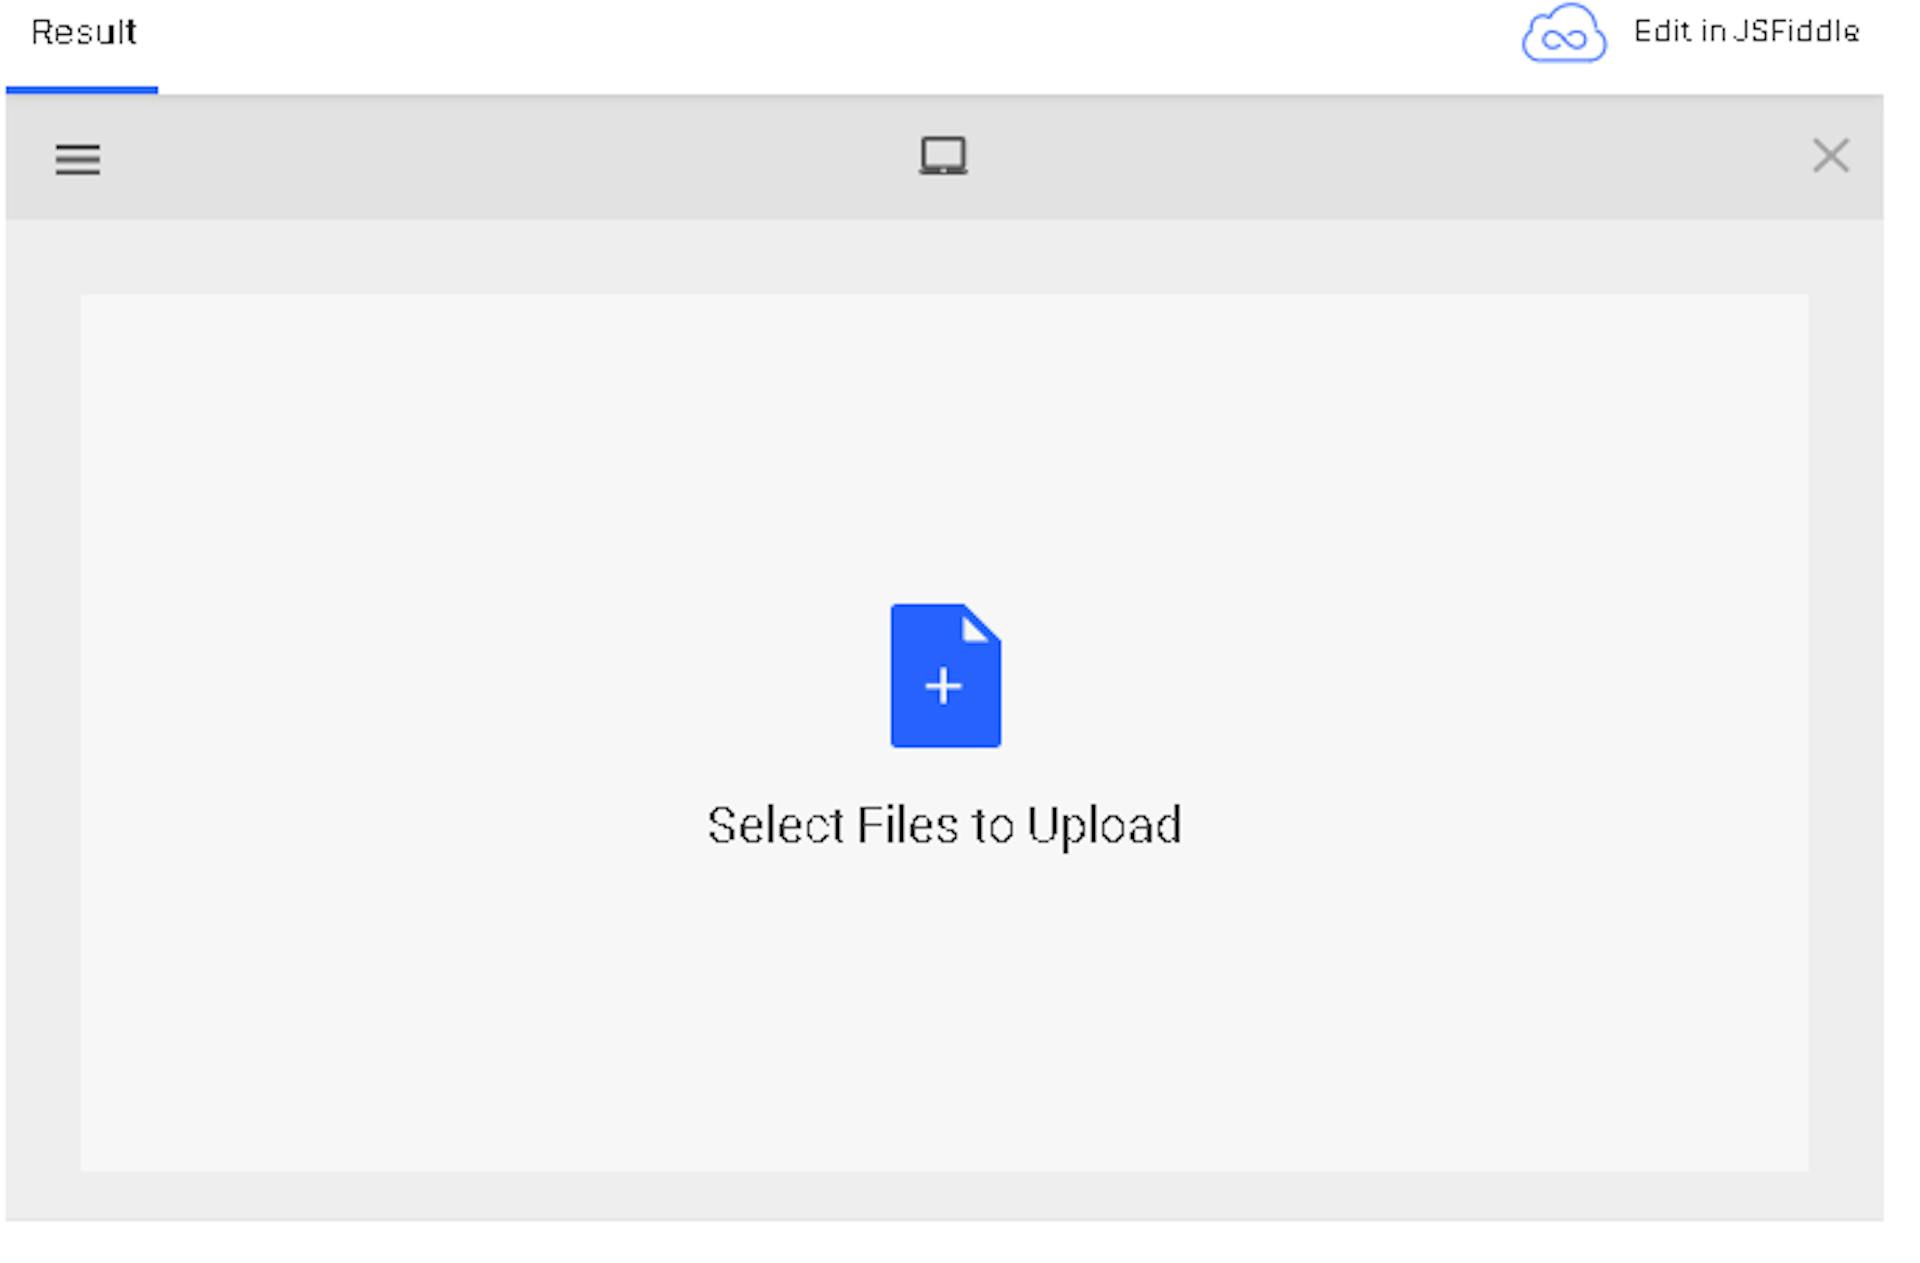 Cargador de archivos Filestack para cargar imágenes rápidamente